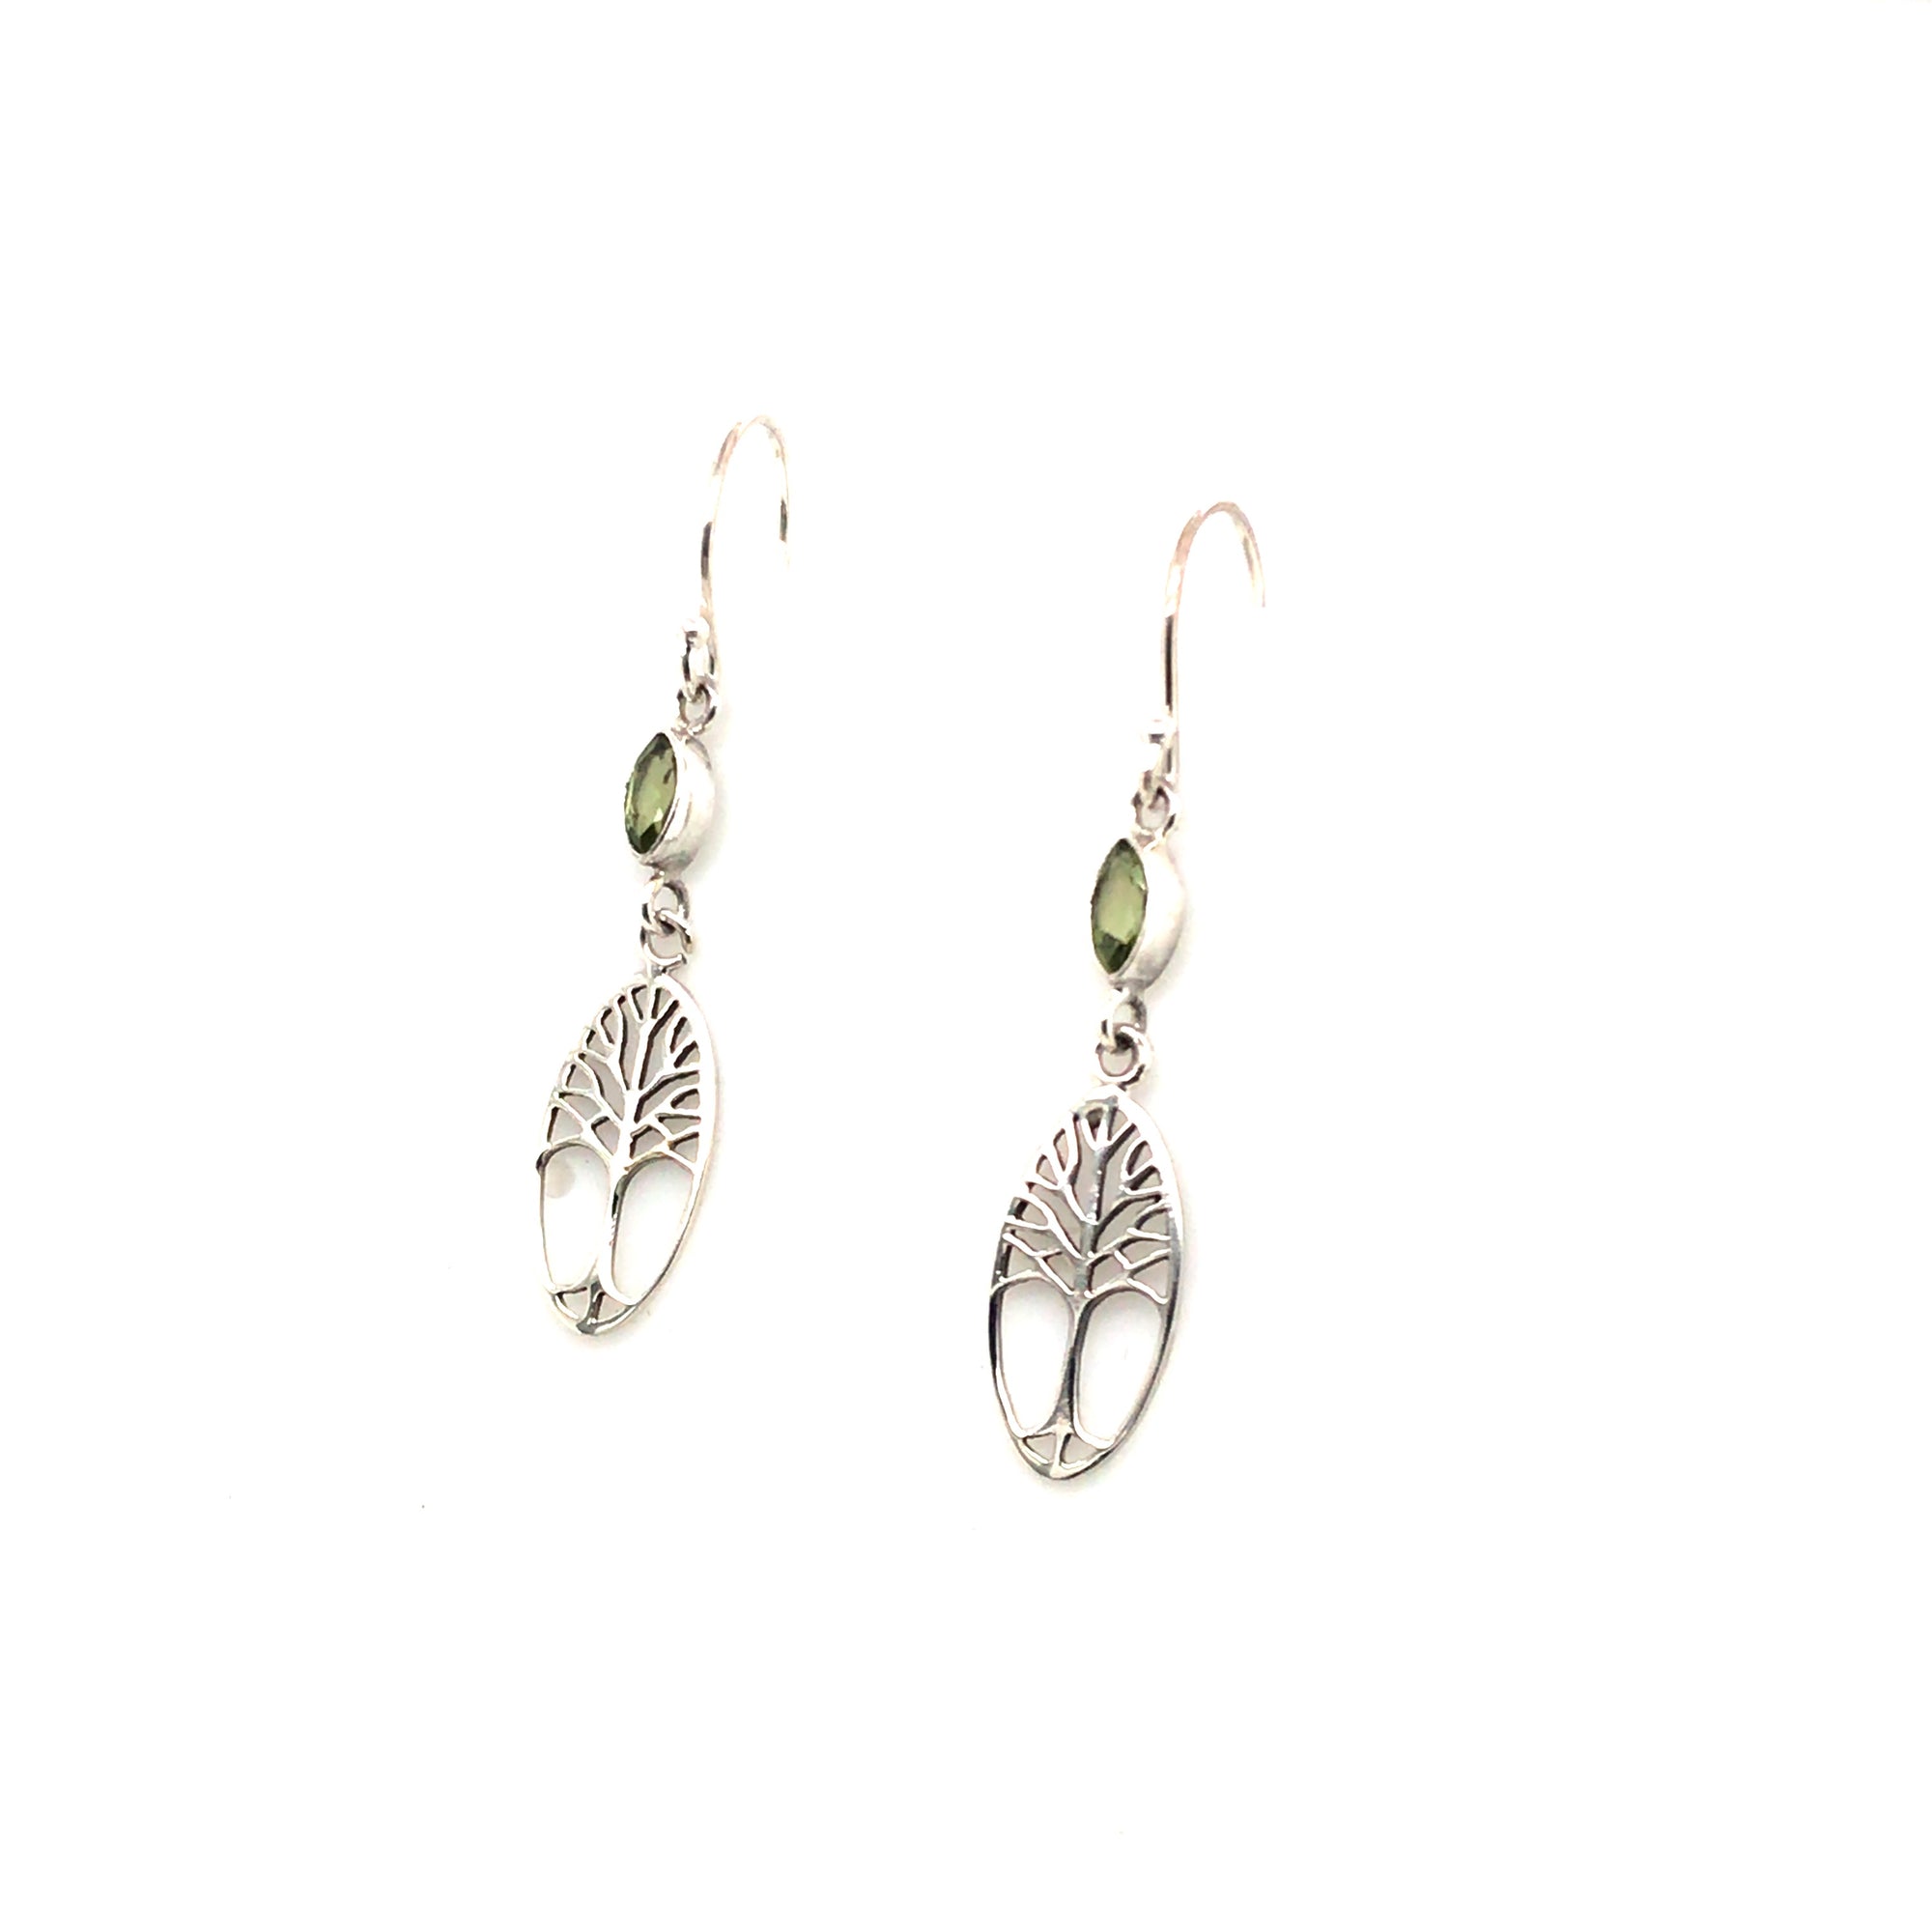 Sterling silver tree of life peridot earrings